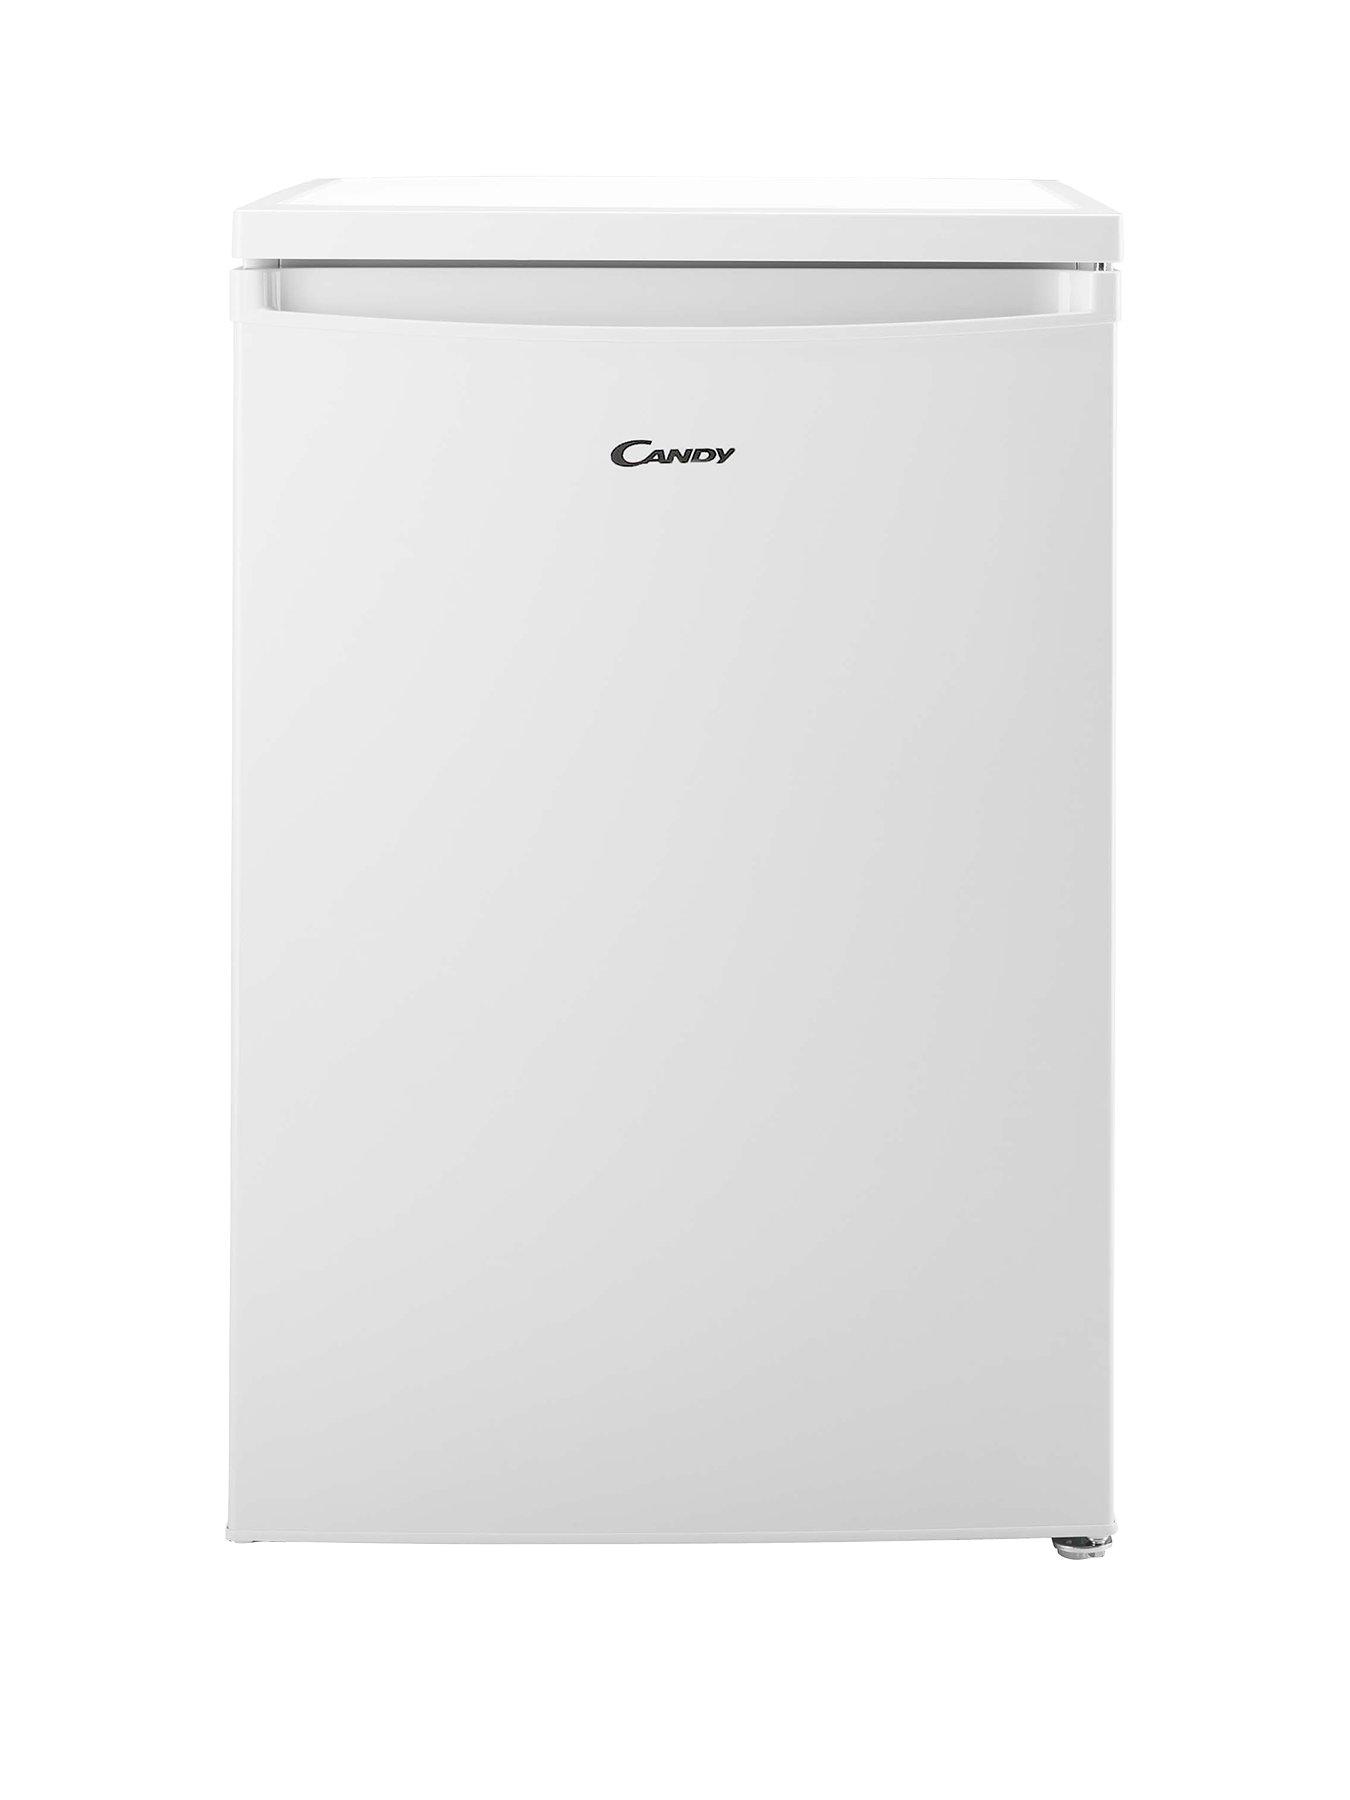 Candy Ctz552Wk 55Cm Wide Under-Counter Freezer – White